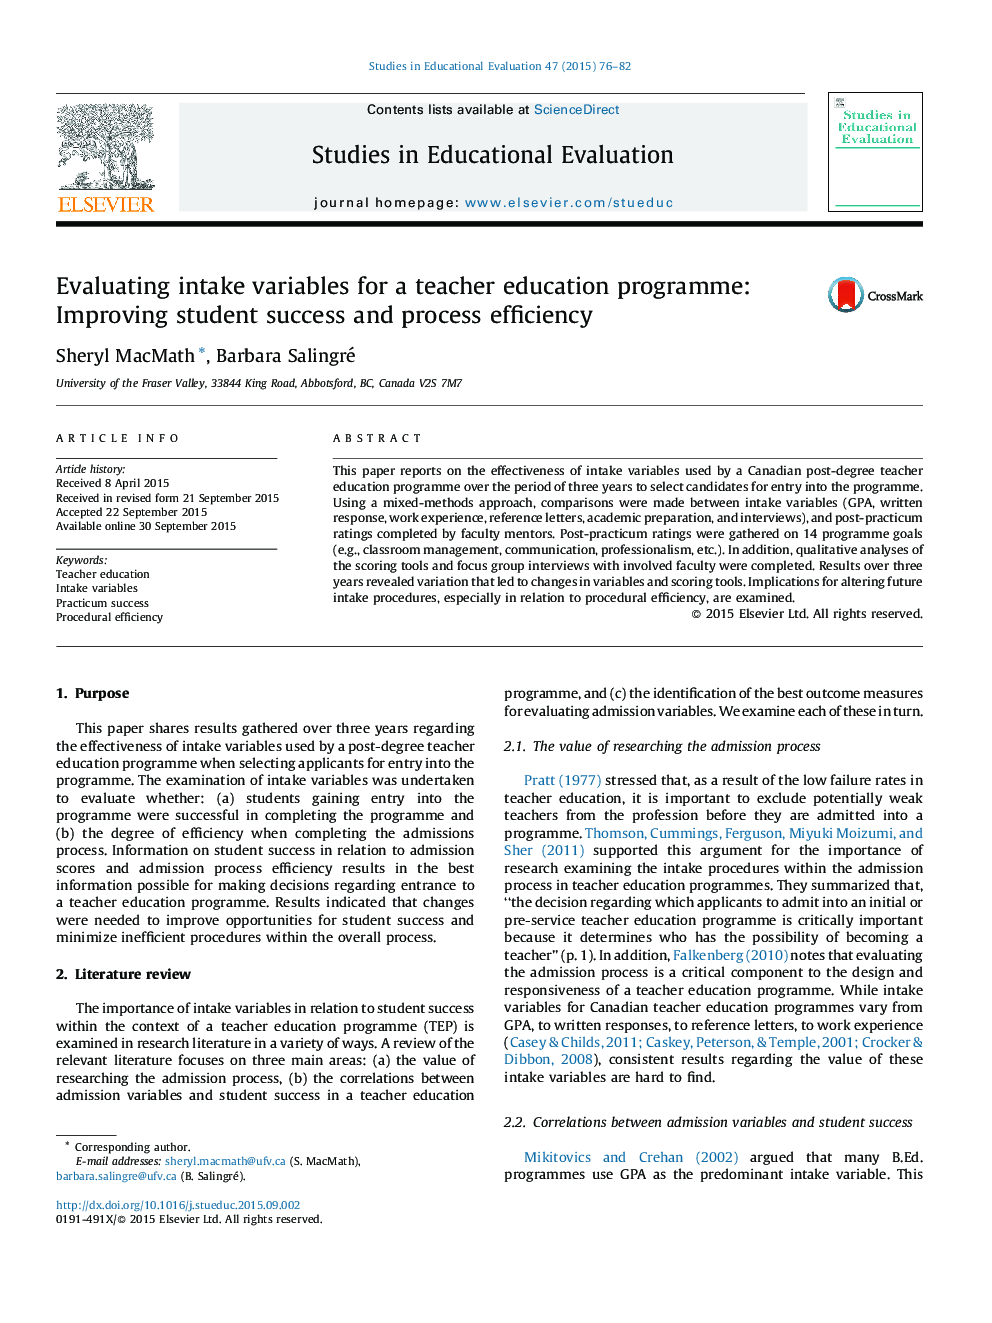 ارزیابی متغیرهای مصرف برای یک برنامه آموزش و پرورش معلم: بهبود موفقیت دانش آموز و کارایی فرآیند